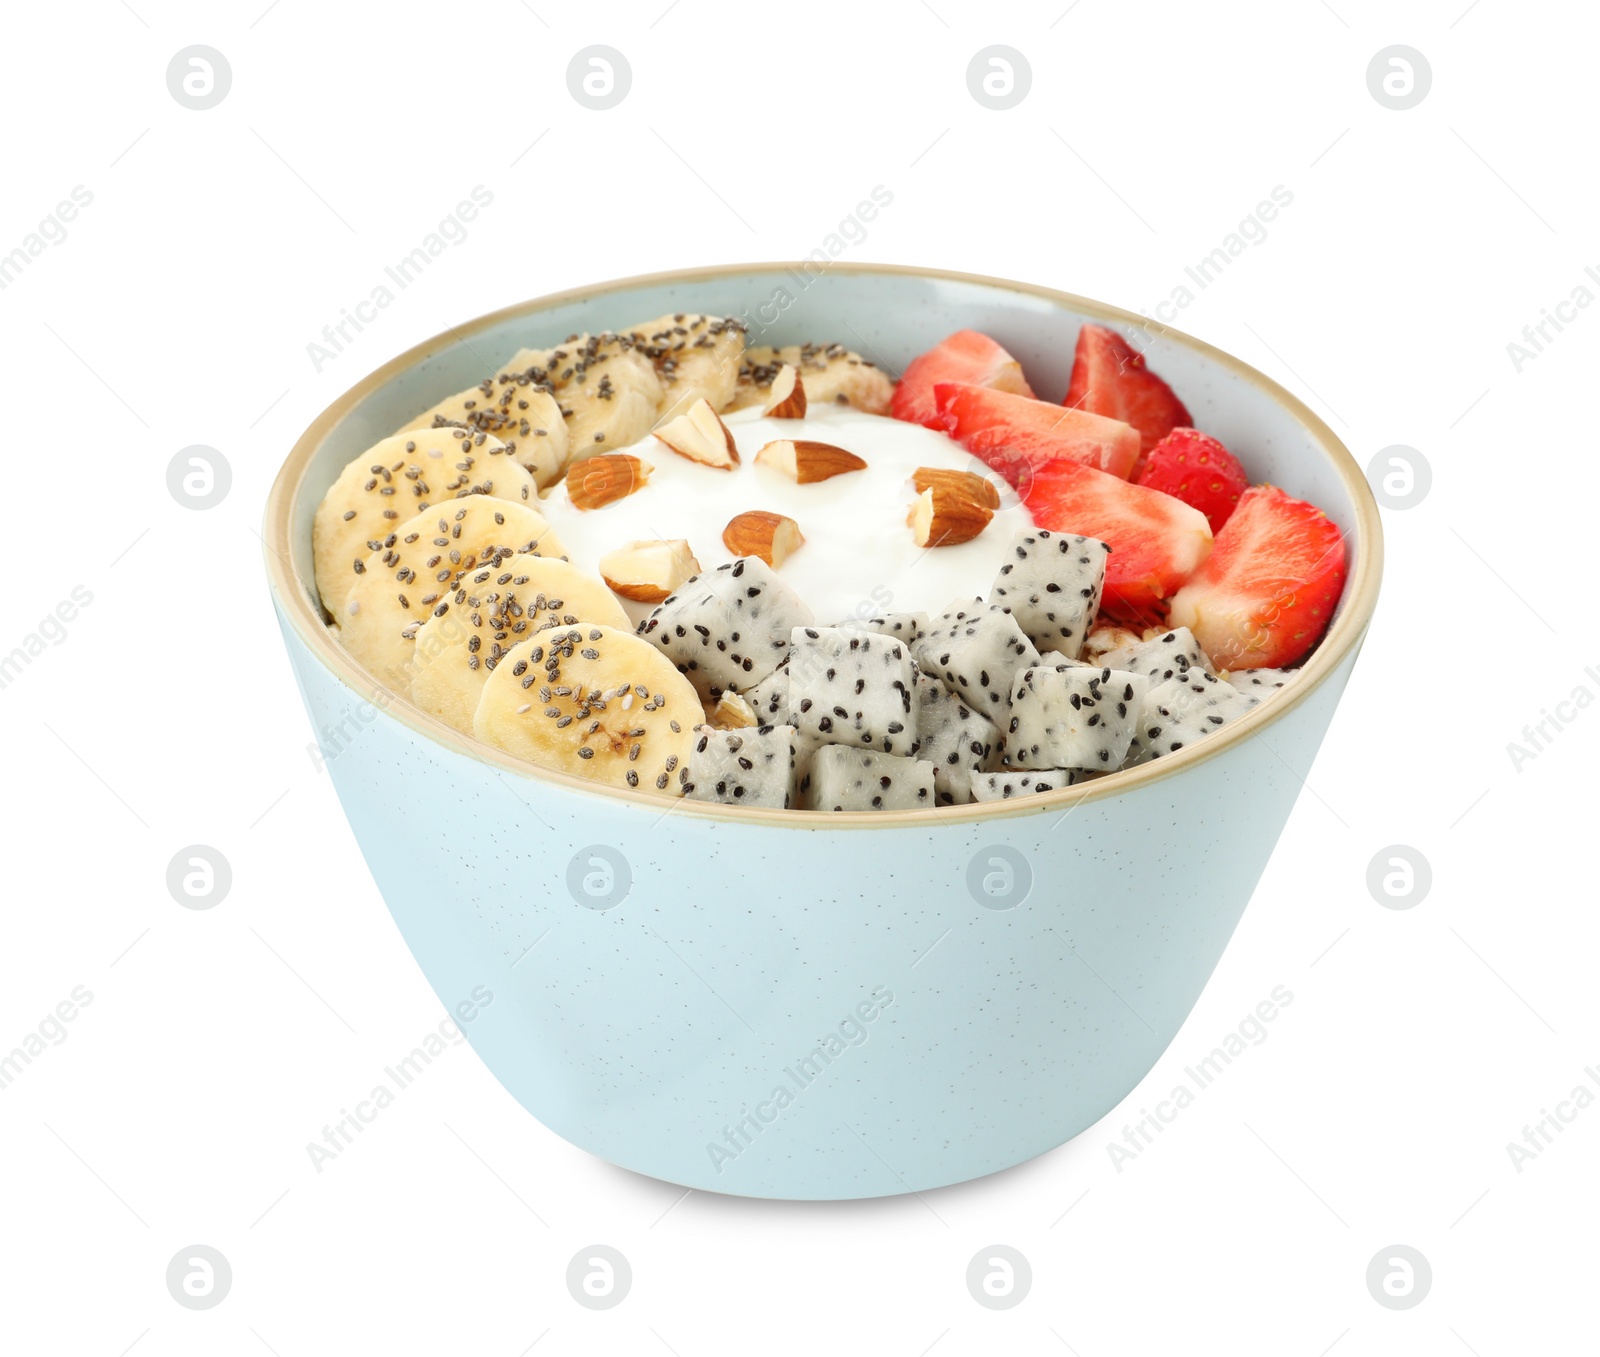 Photo of Bowl of granola with pitahaya, banana, strawberries and yogurt isolated on white